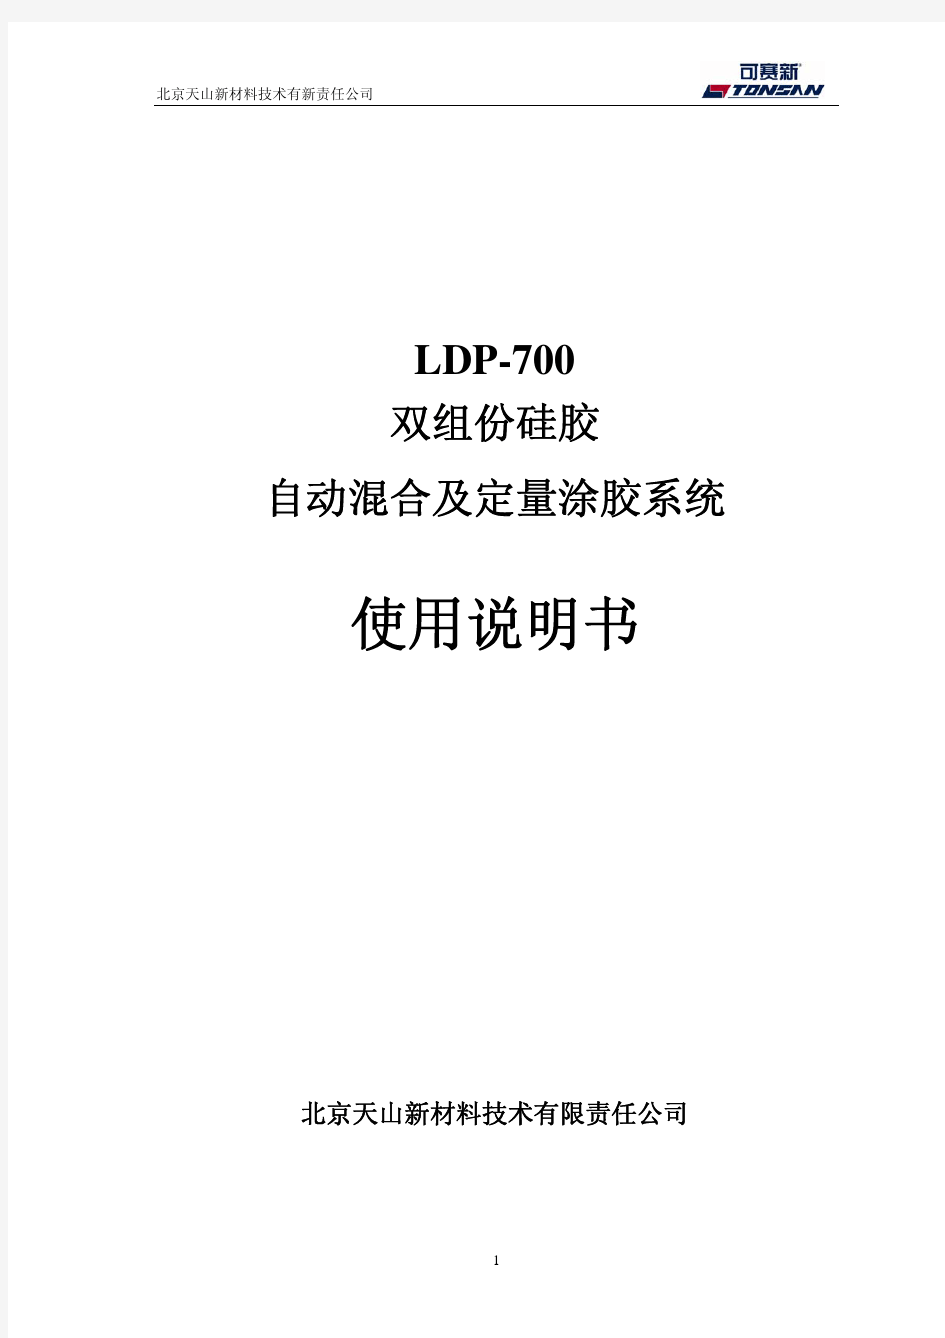 双组份注胶机使用说明书_-LDP700